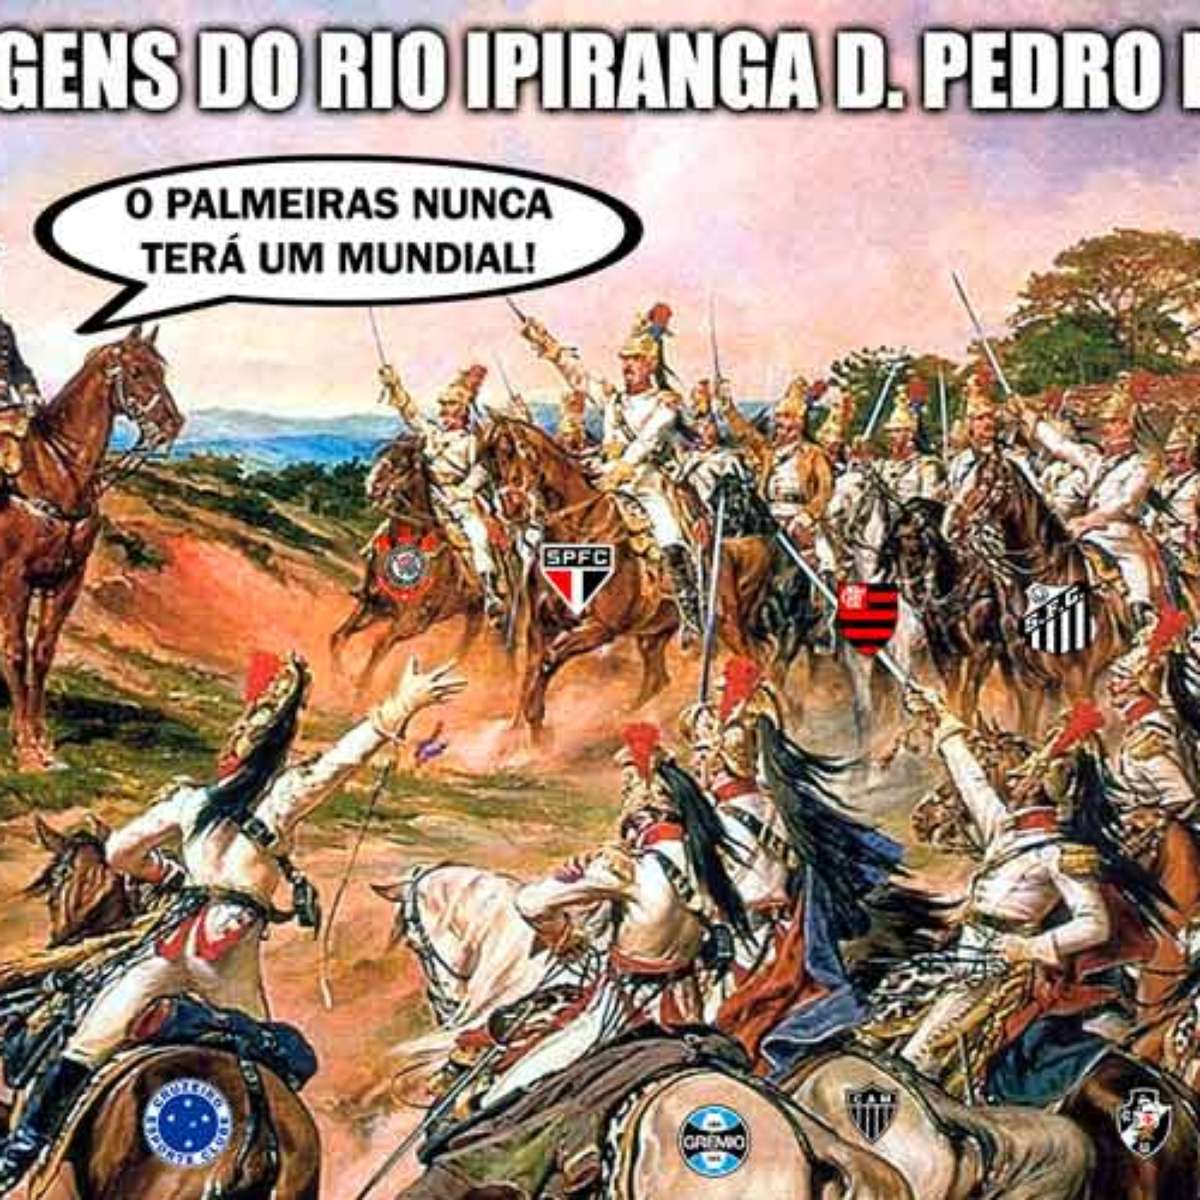 Palmeiras não tem Mundial? Entenda a polêmica e os memes - Esporte - Extra  Online